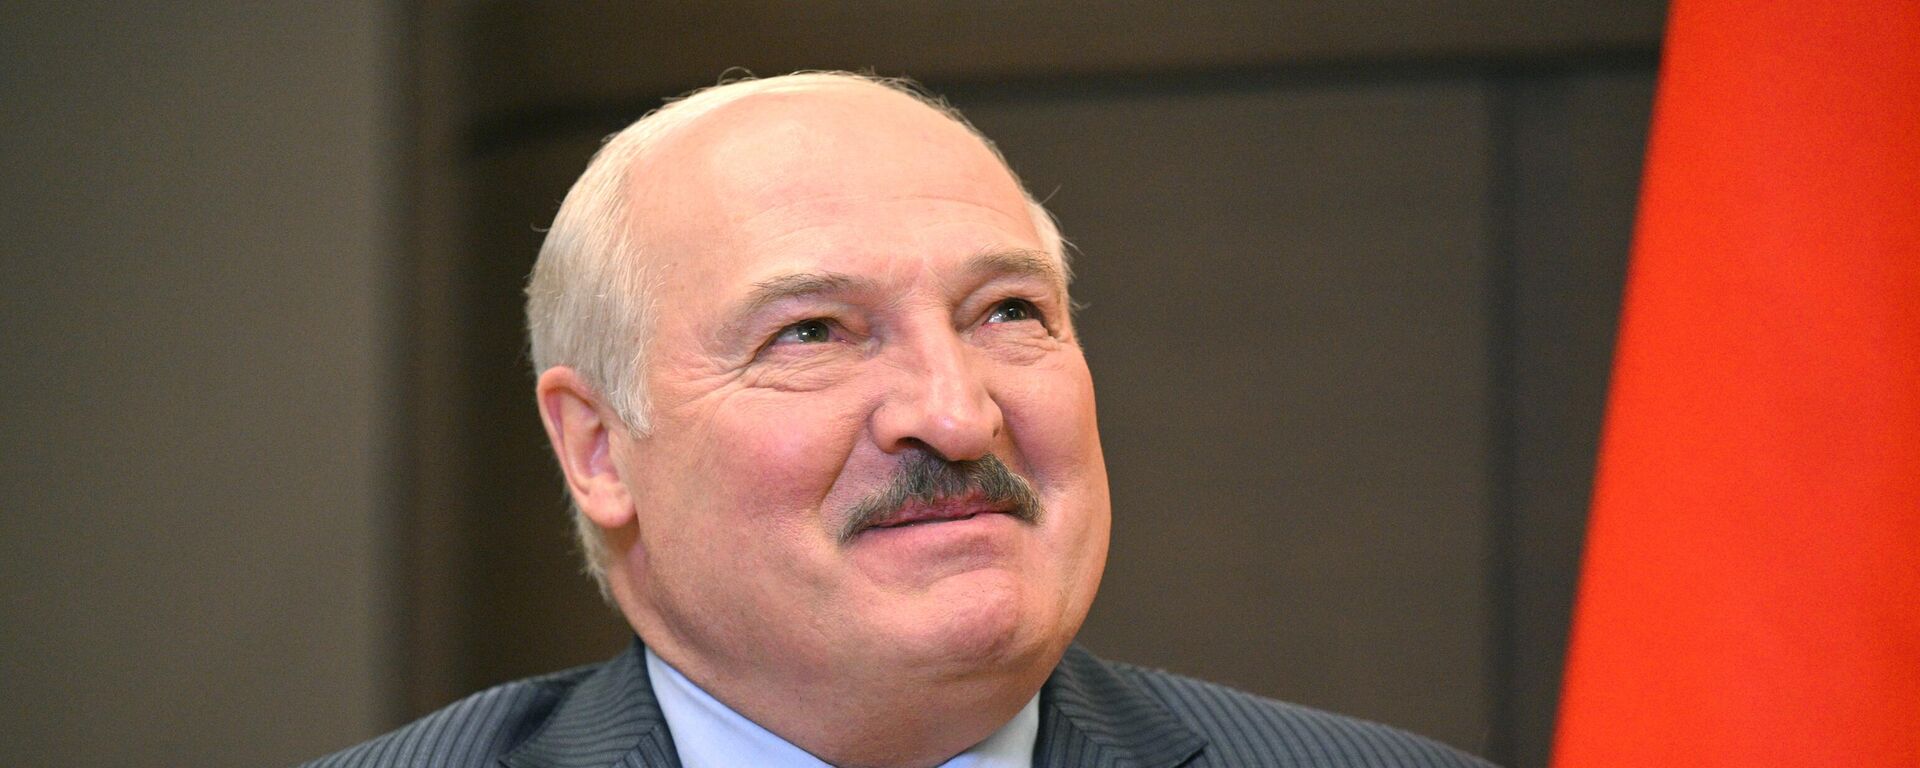 Alexandr Lukashenko, el presidente de Bielorrusia - Sputnik Mundo, 1920, 16.09.2022